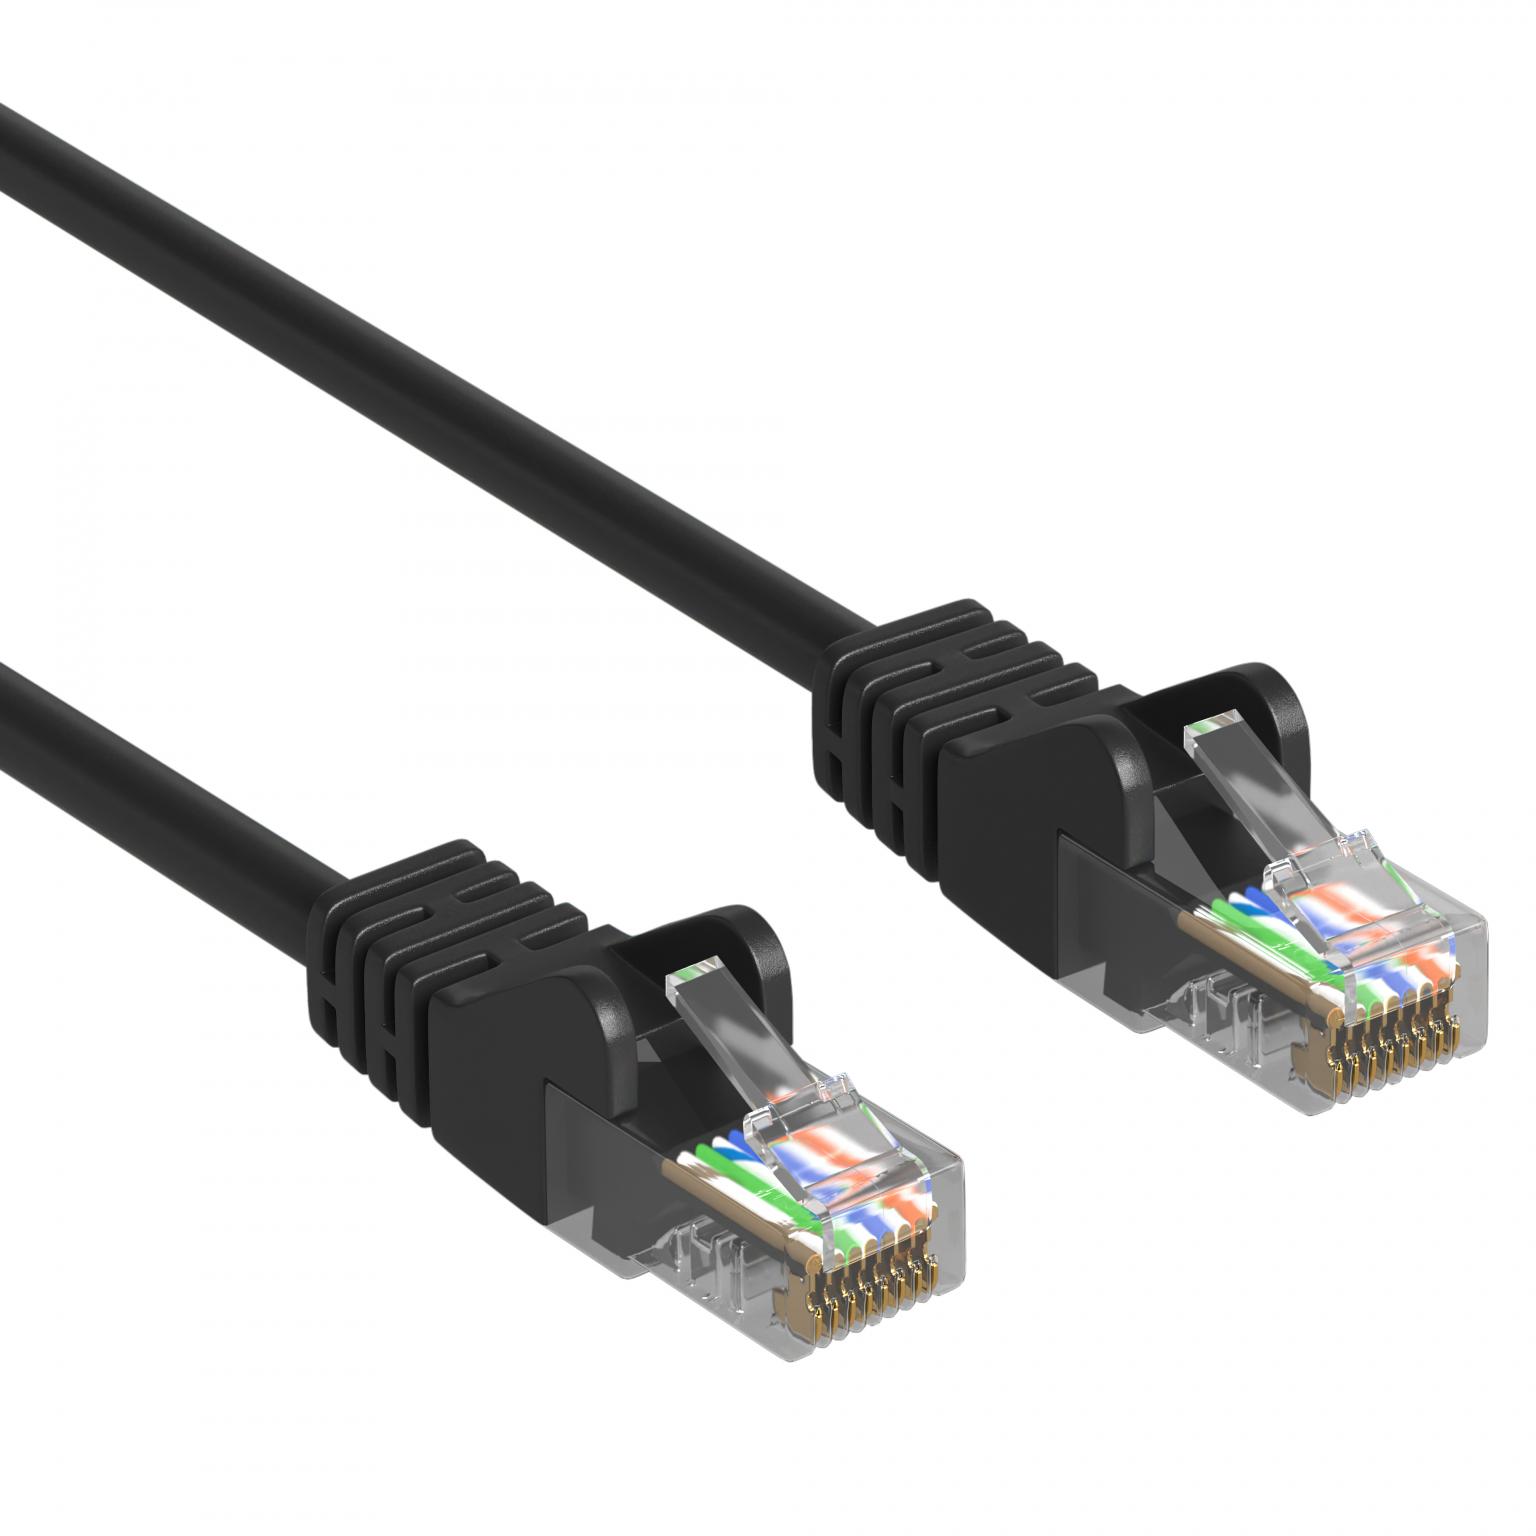 Verstoring Uitsluiten hoe vaak UTP CAT.5 NETWERK KABEL - Type: UTP CAT5 Netwerkkabel, (patch kabel)  Afgeschermd - PVC, Lengte: 3 Meter, Kleur: Zwart.